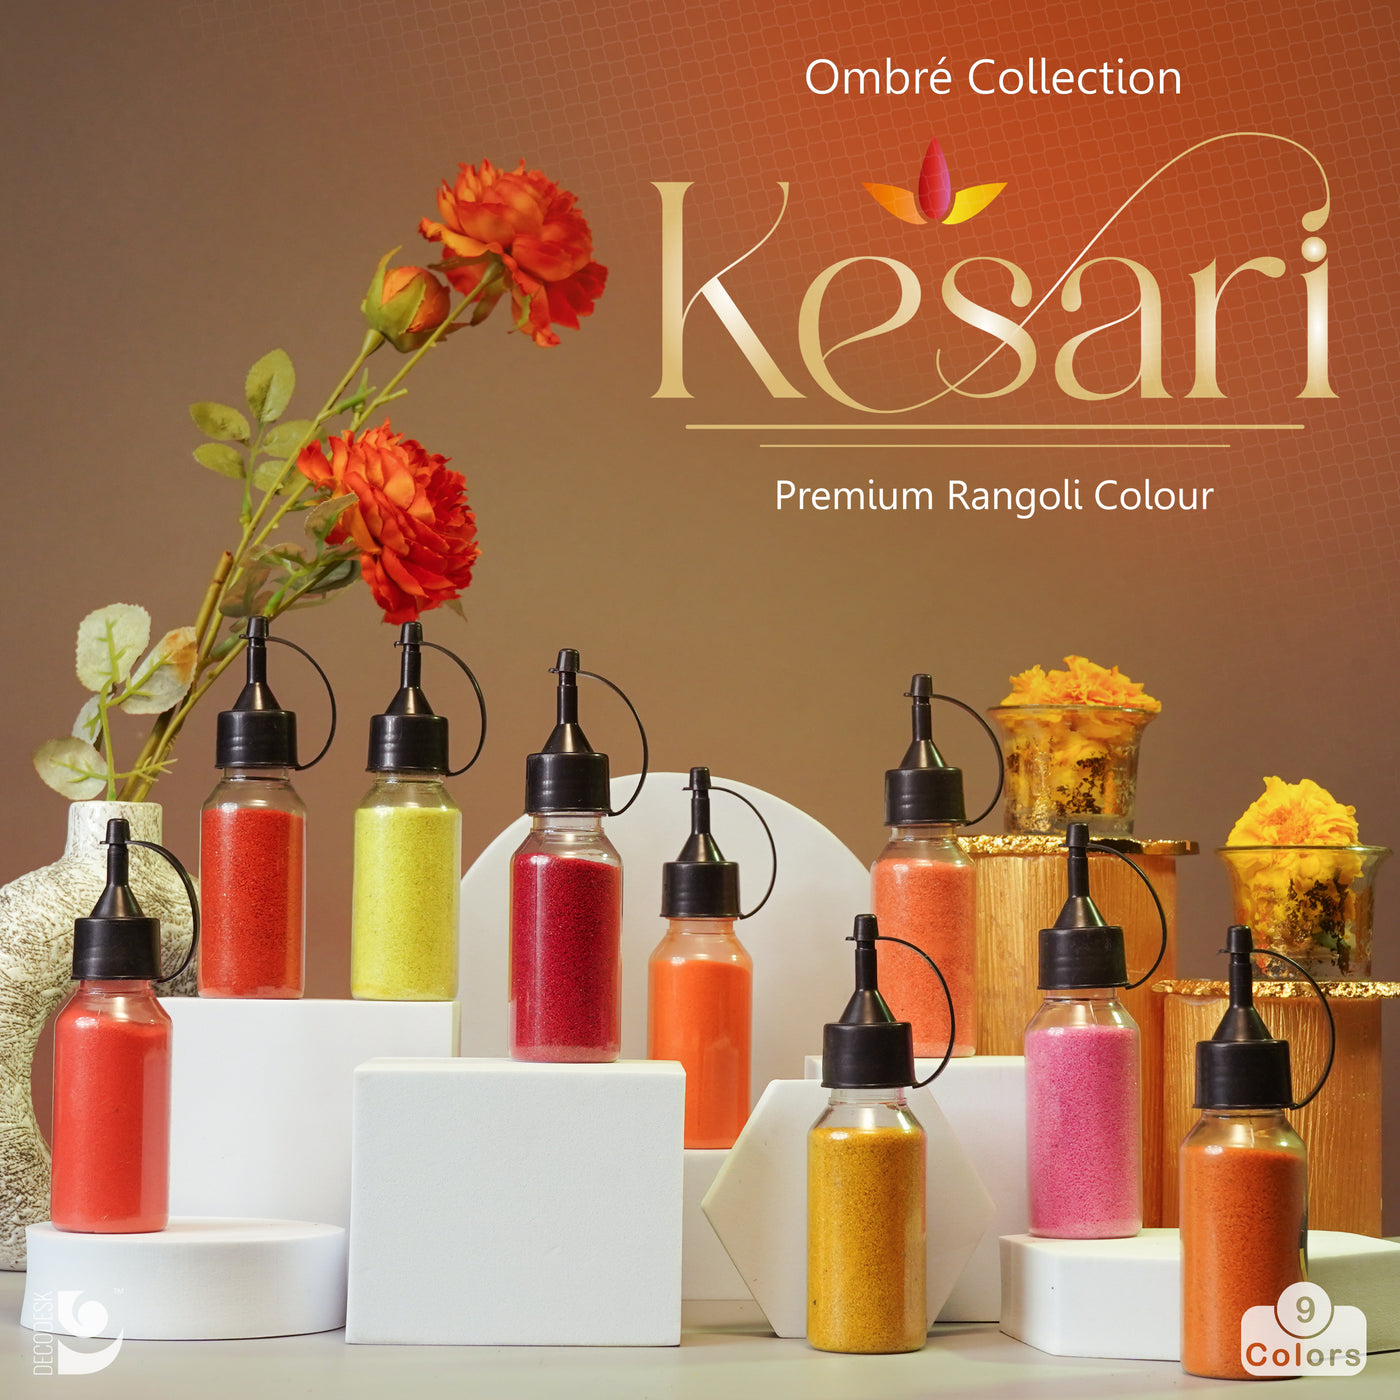 Kesari Premium Rangoli Colour from island rangoli